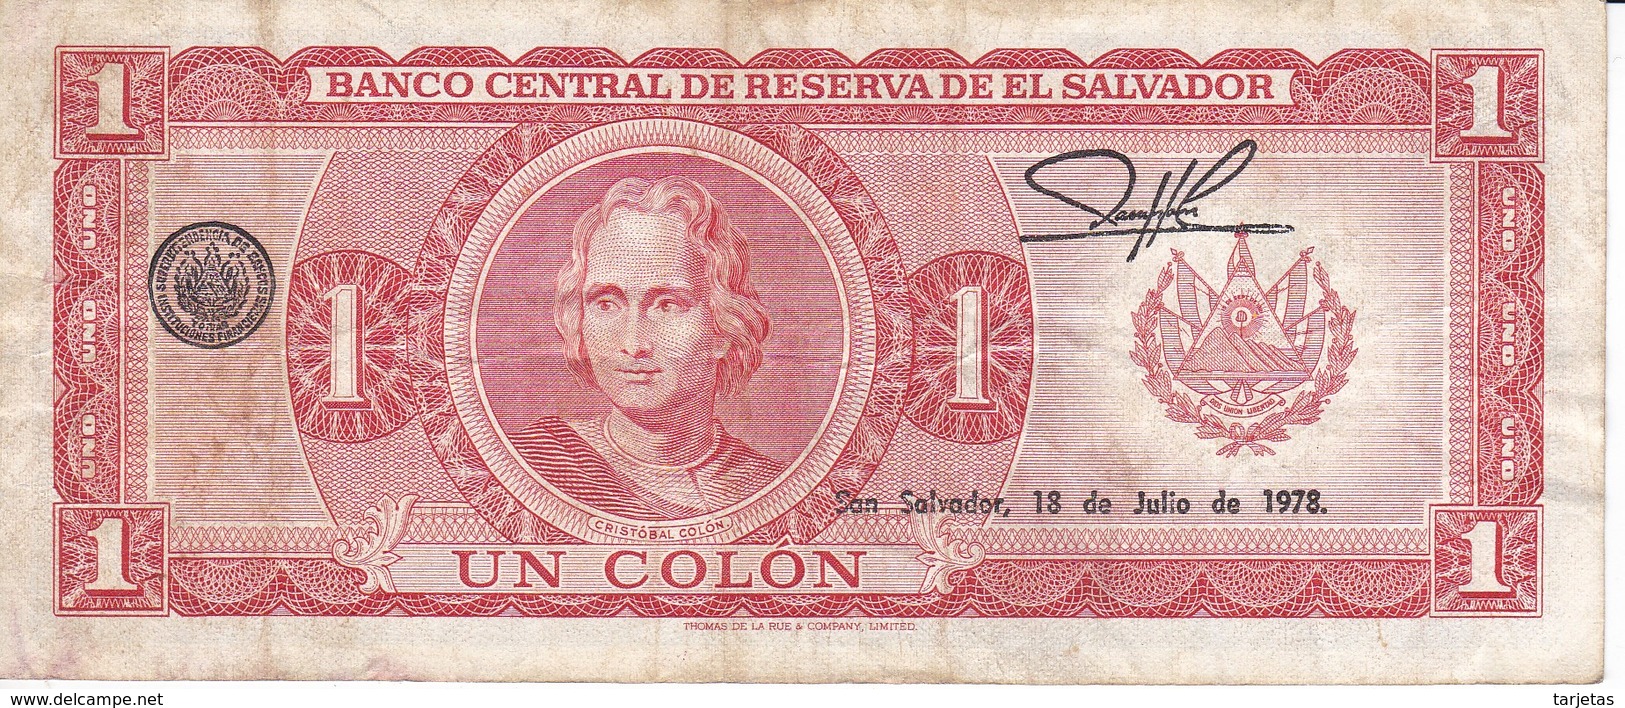 BILLETE DE EL SALVADOR DE 1 COLON DEL AÑO 1976 / 1978 DE CRISTOBAL COLON(BANKNOTE) - Salvador